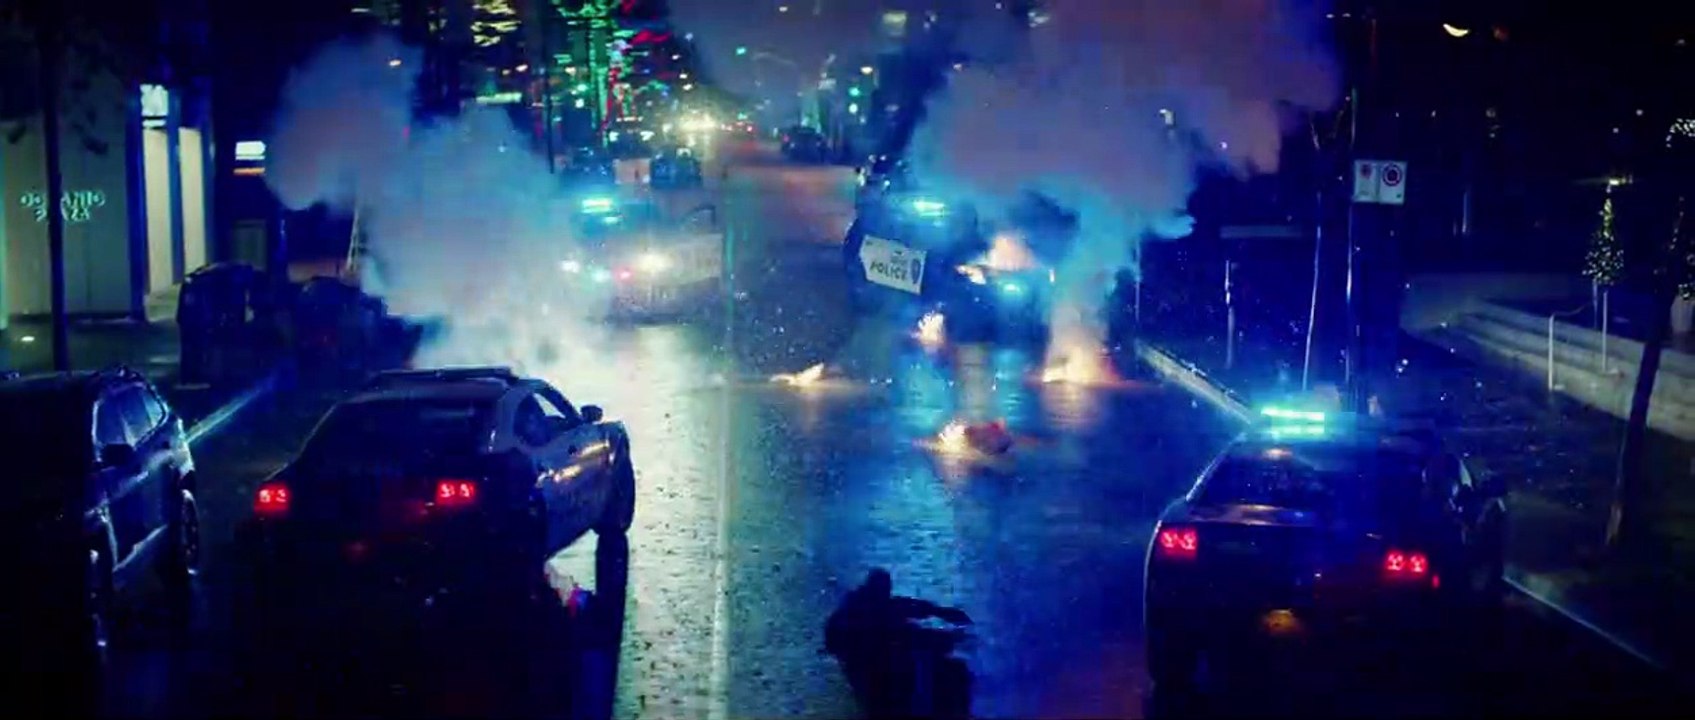 Detective Knight 2: Redemption Trailer OV